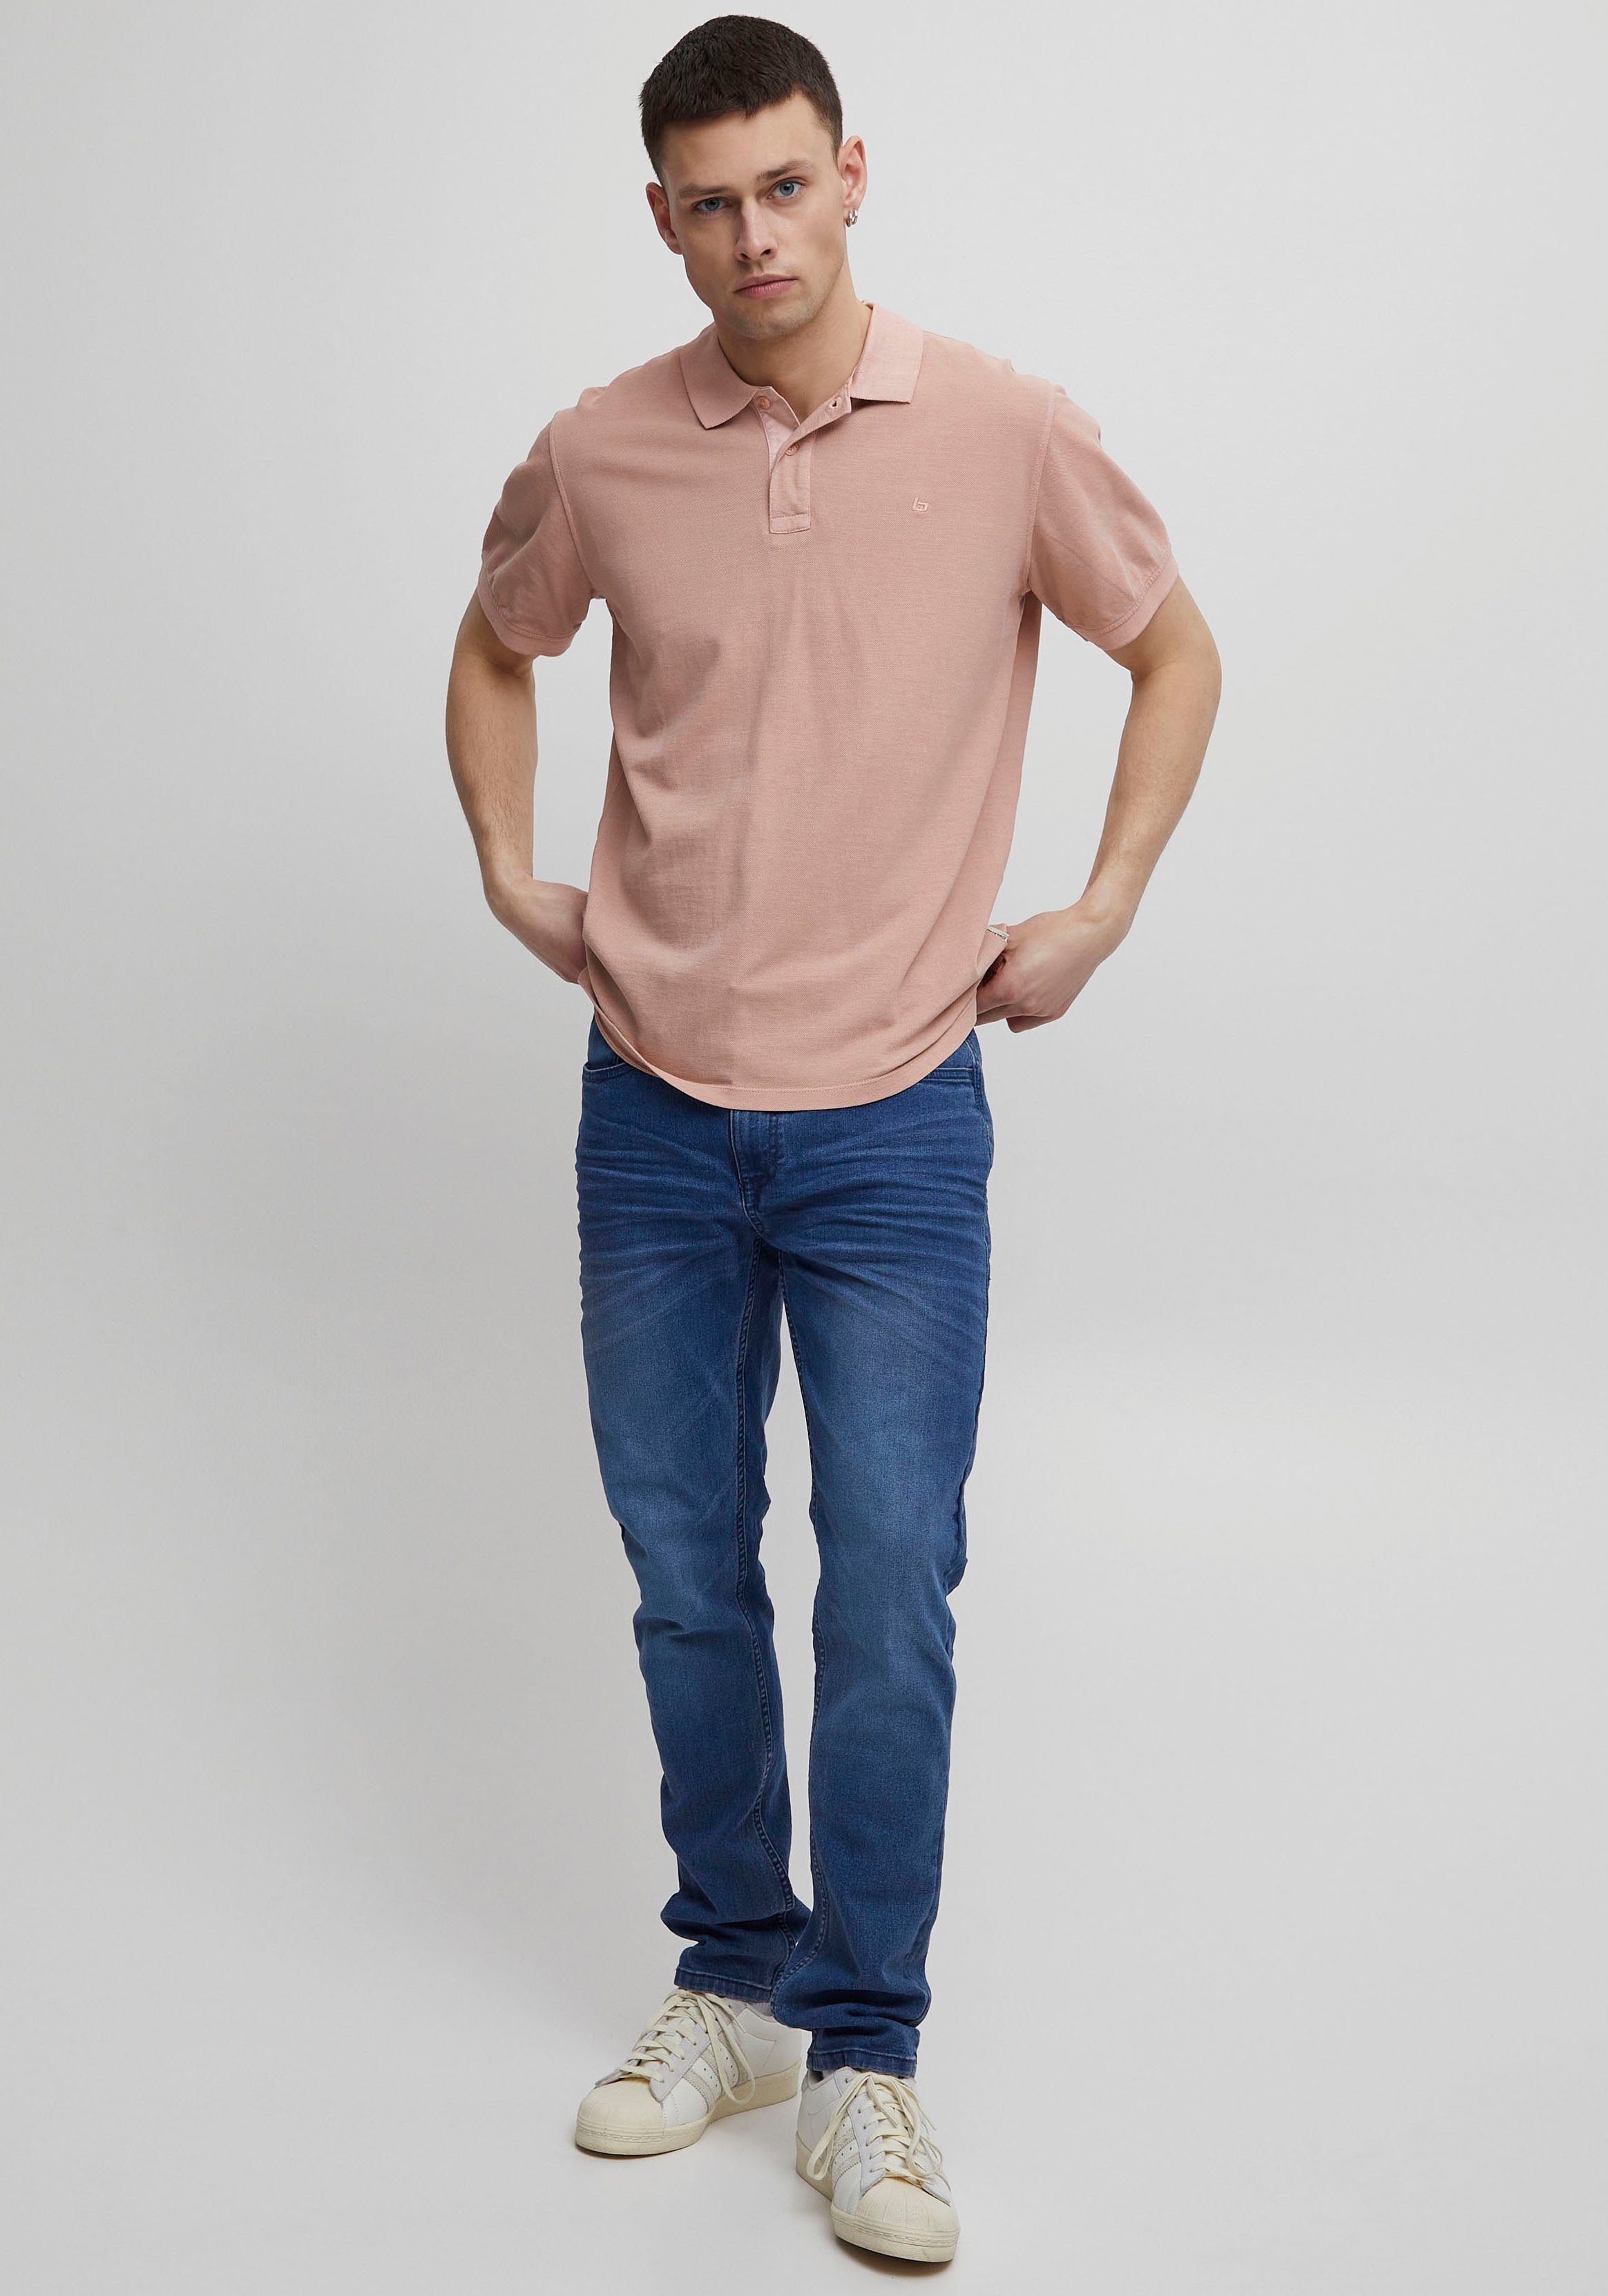 Blend Poloshirt pink BL-Poloshirt